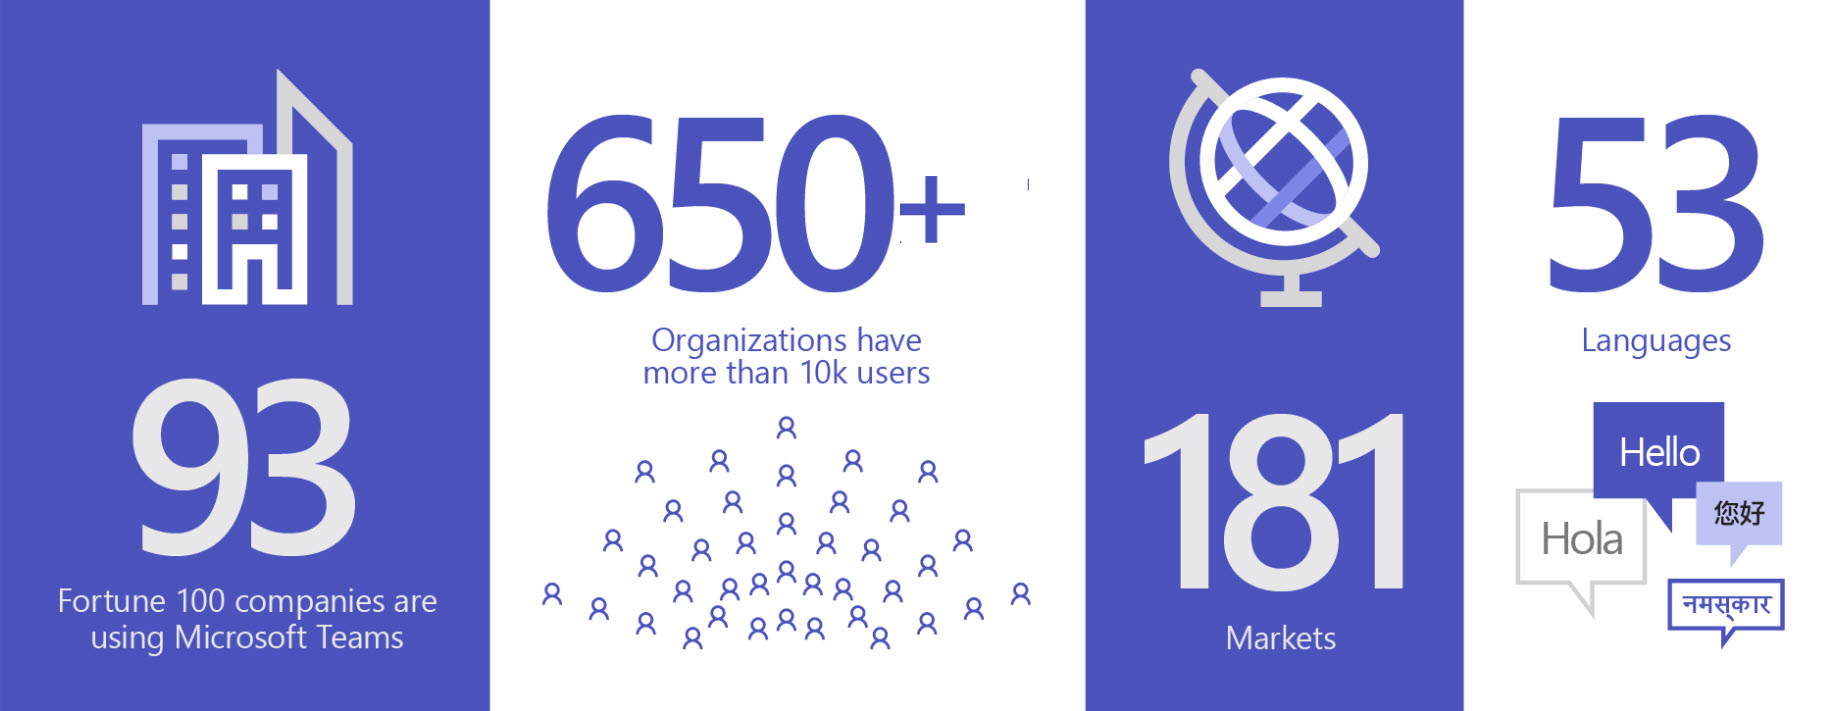 Afbeelding met 93 bedrijven die Teams gebruiken, meer dan 650 bedrijven hebben meer dan 10.000 gebruikers in 181 markten en 53 talen.